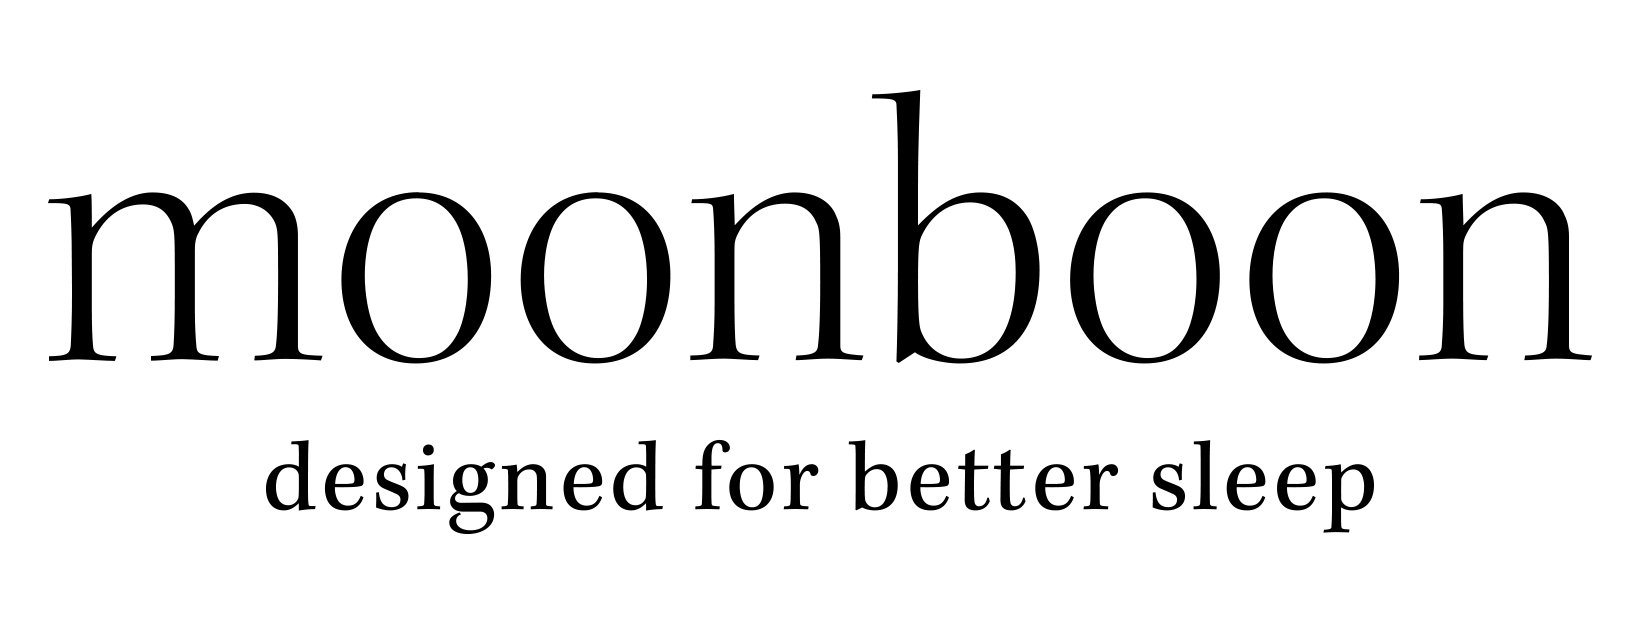 Moonboon - Hjælpecenter logo